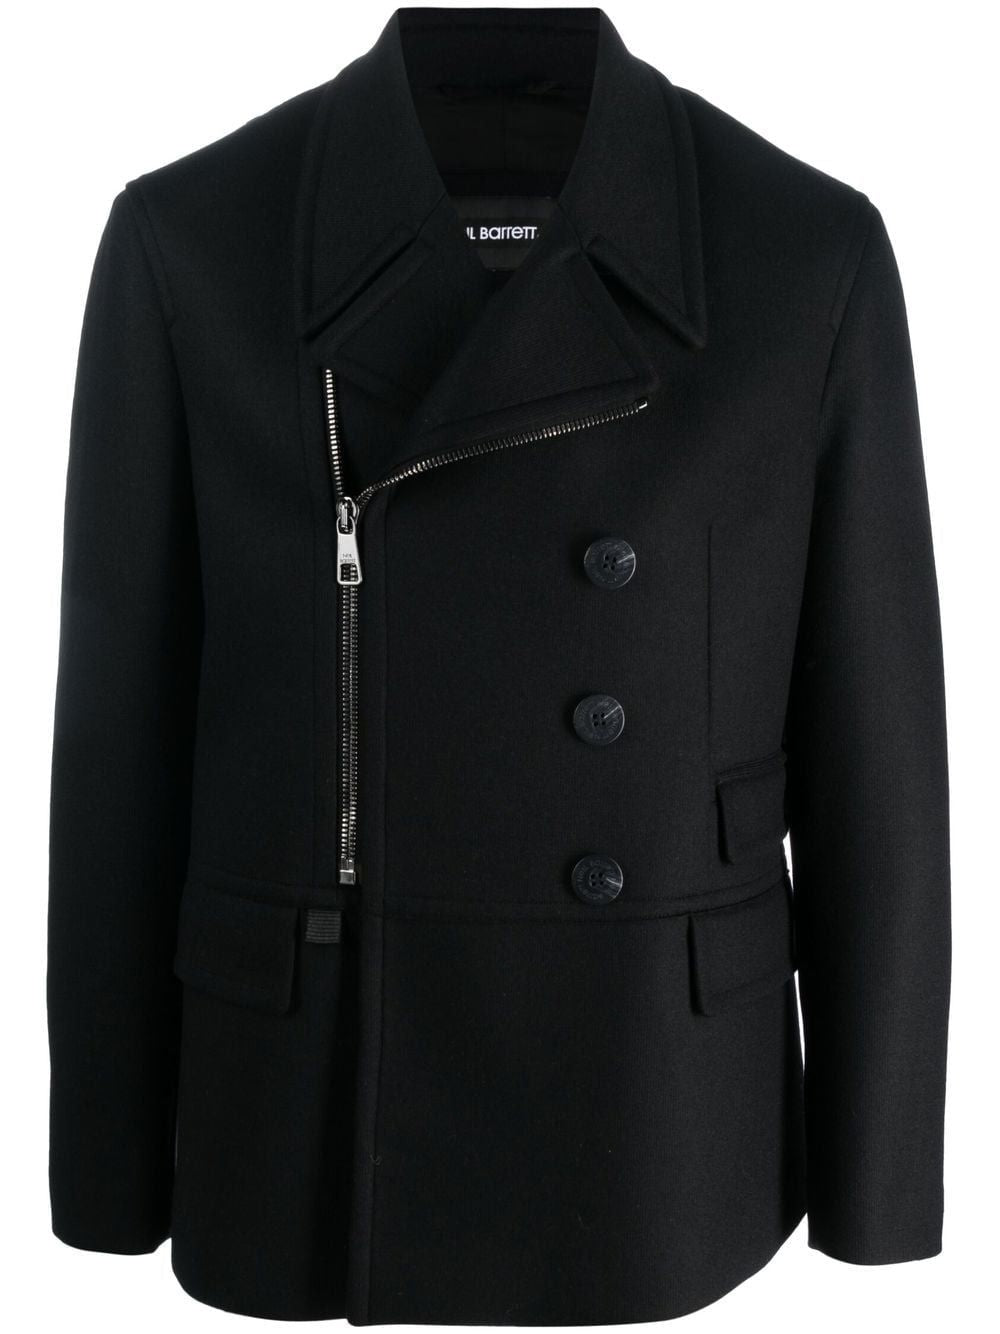 Áo khoác Peacoat nam màu đen cho mùa thu đông 22